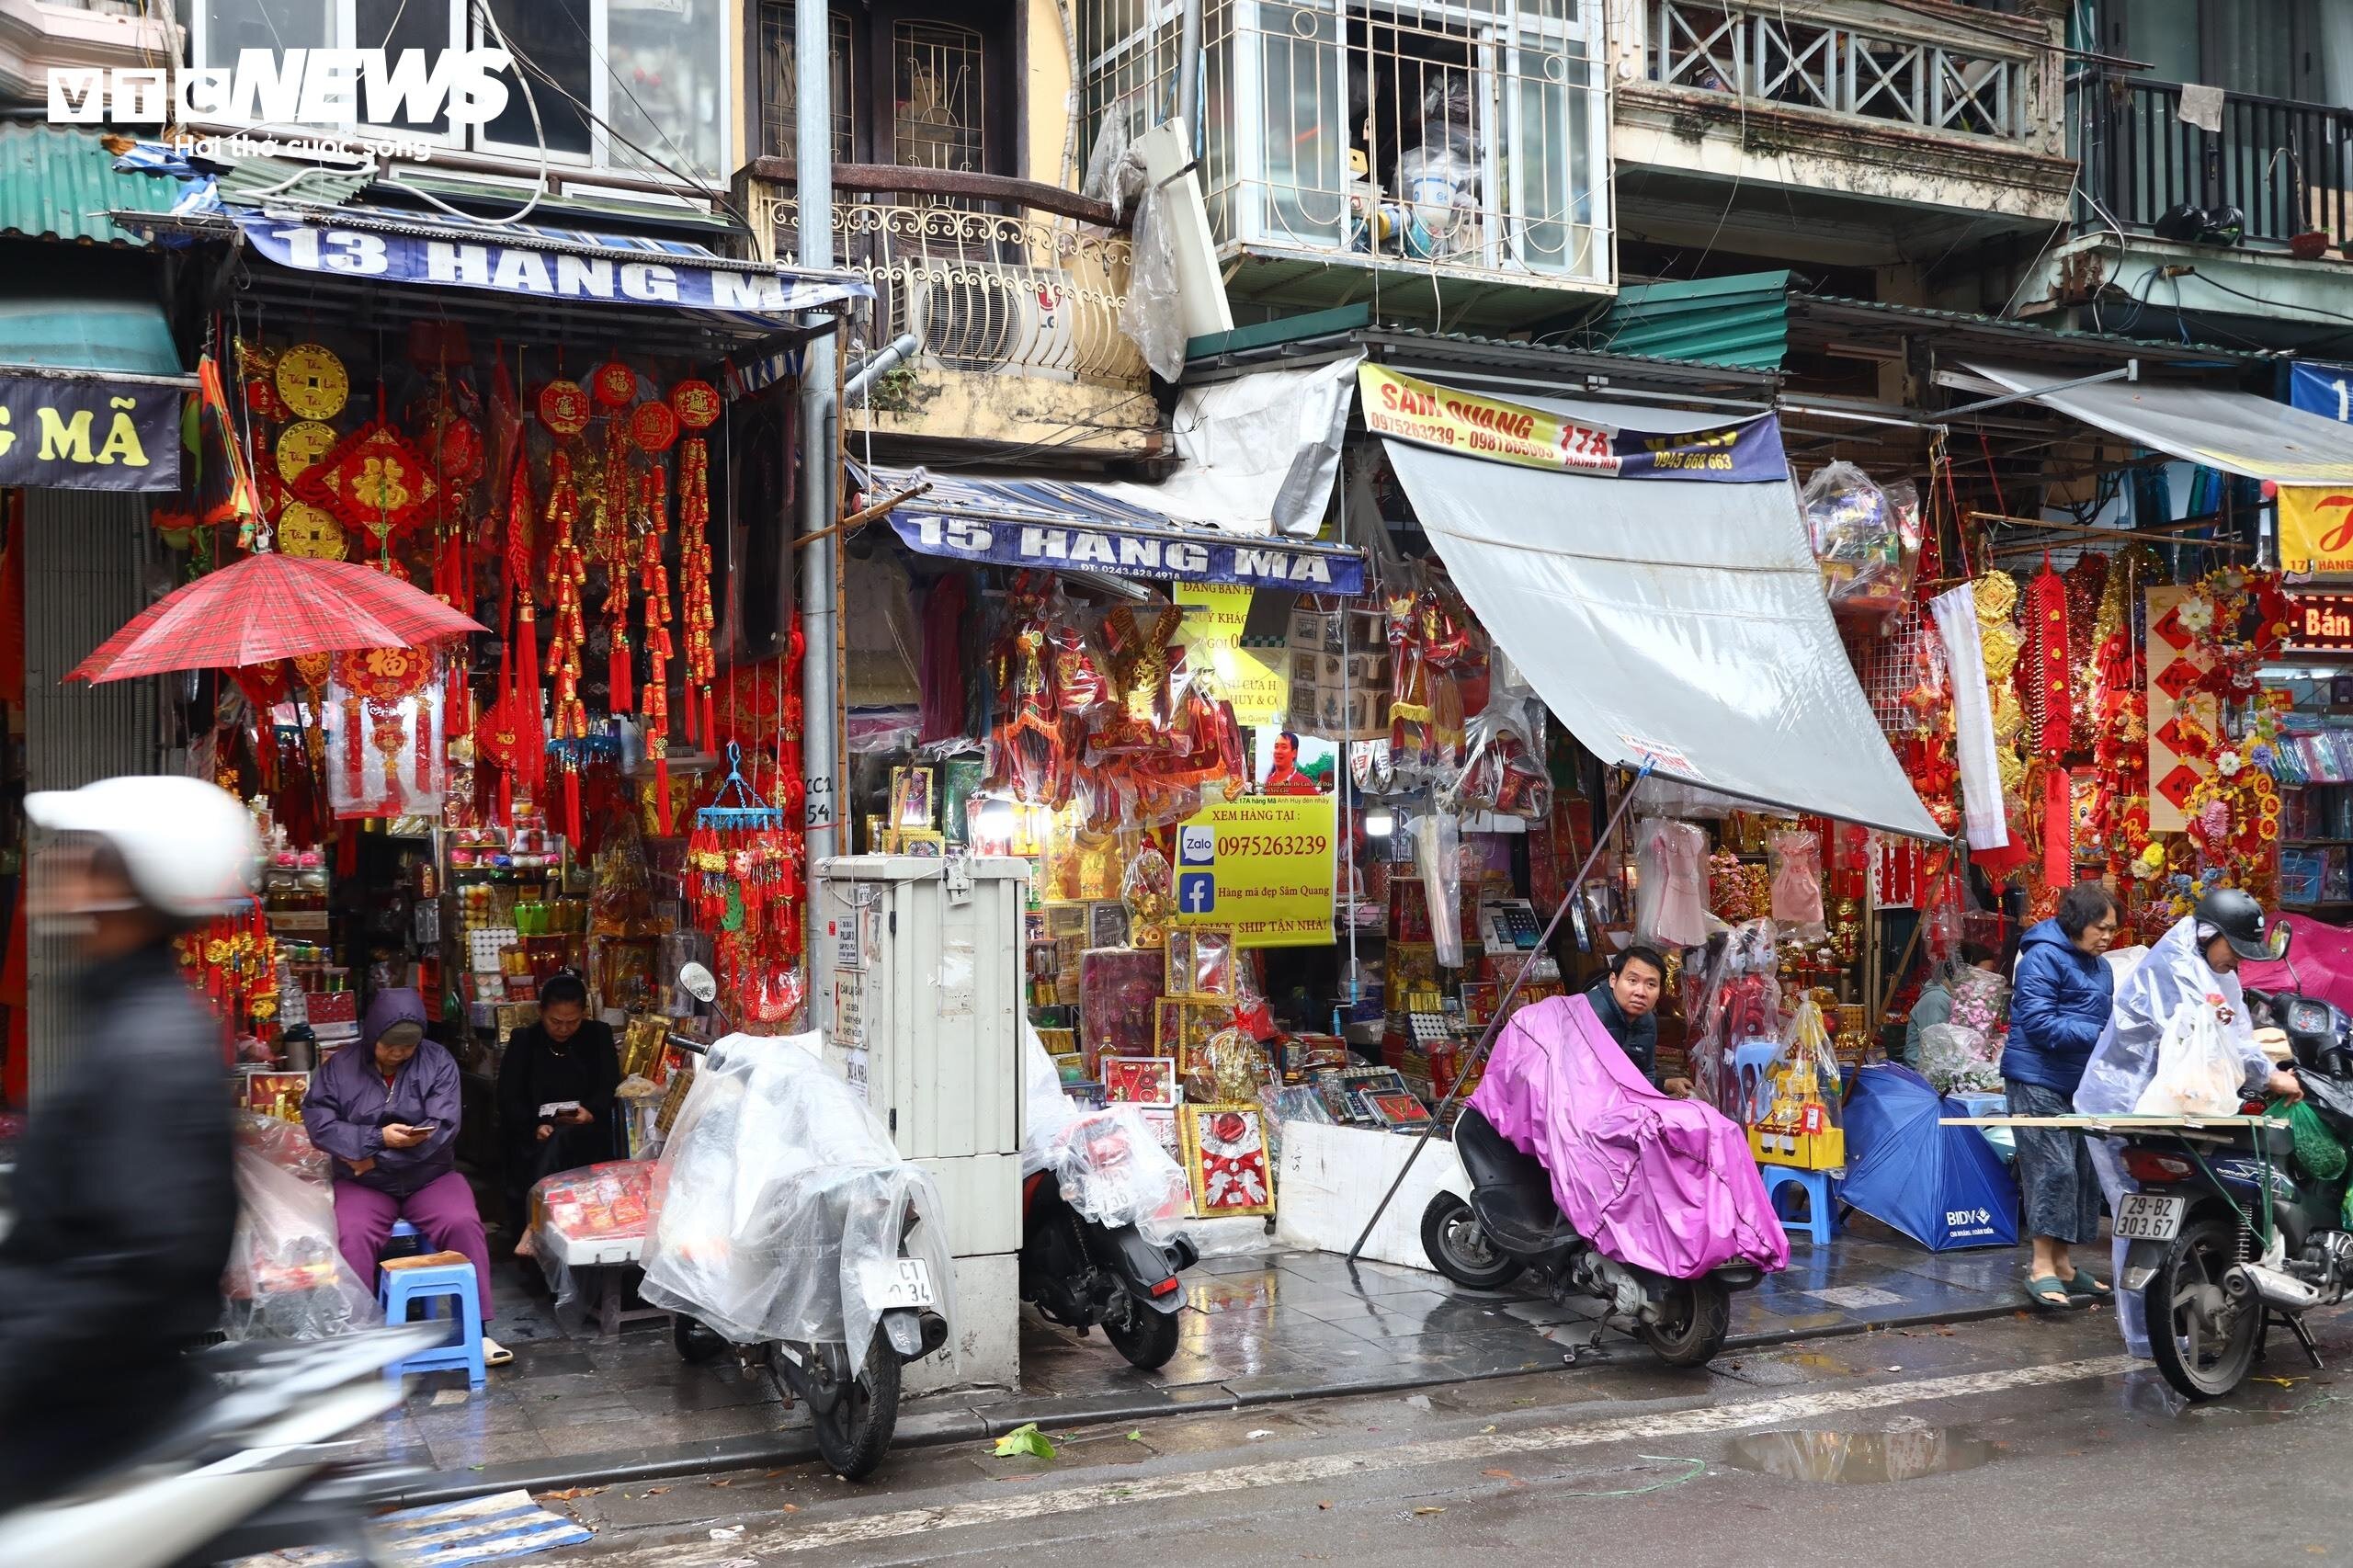 Trời mưa khiến những cửa hàng vàng mã trên phố Hàng Mã càng trở nên 